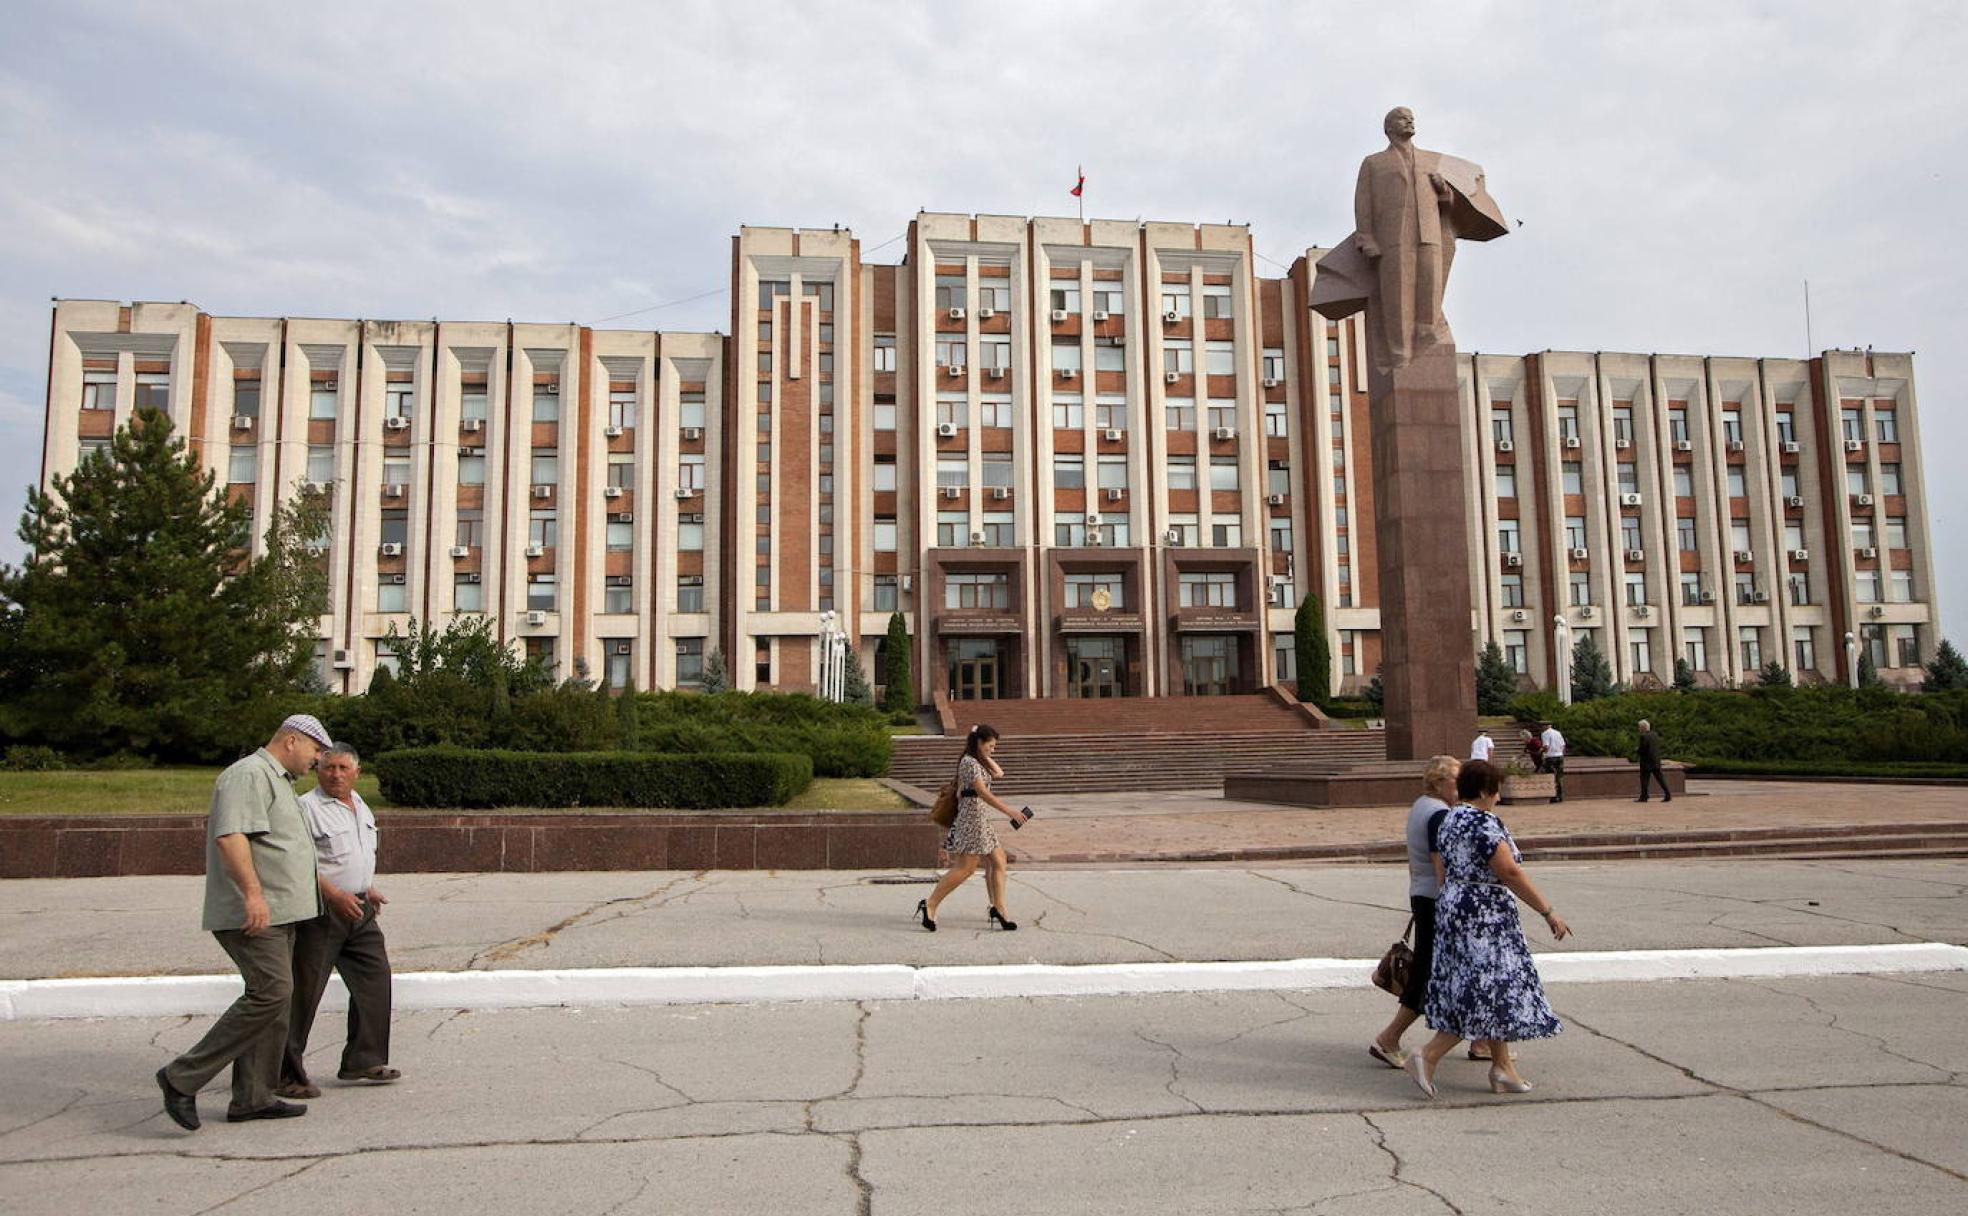 La escultura de Lenin más grande del mundo está en Tiraspol, la capital de Transnistria. Toda la simbología de este territorio gira en torno a su pasado soviético.